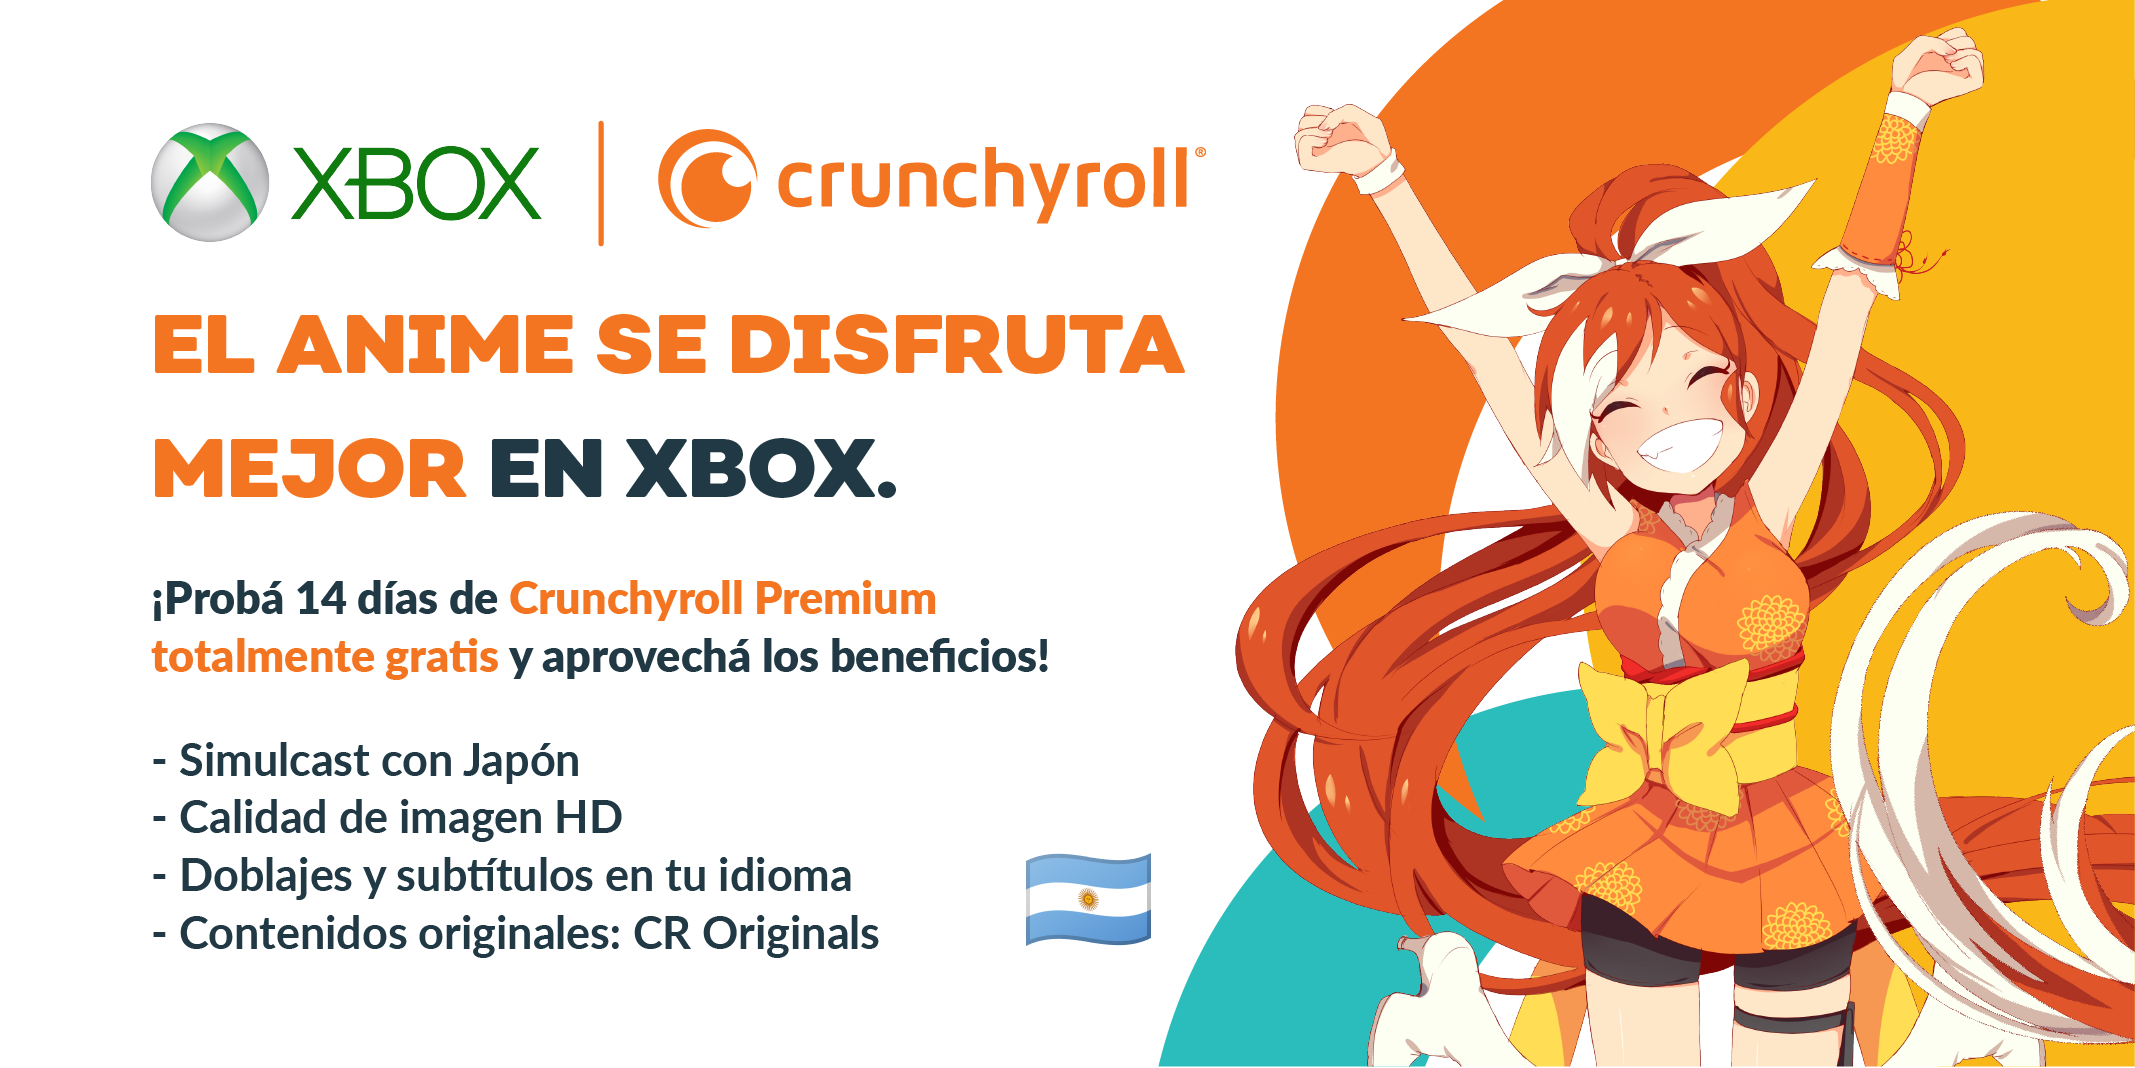 Crunchyroll.es ✨ on X: ¡La skill importa! 🎮💪 #Shanfro   / X